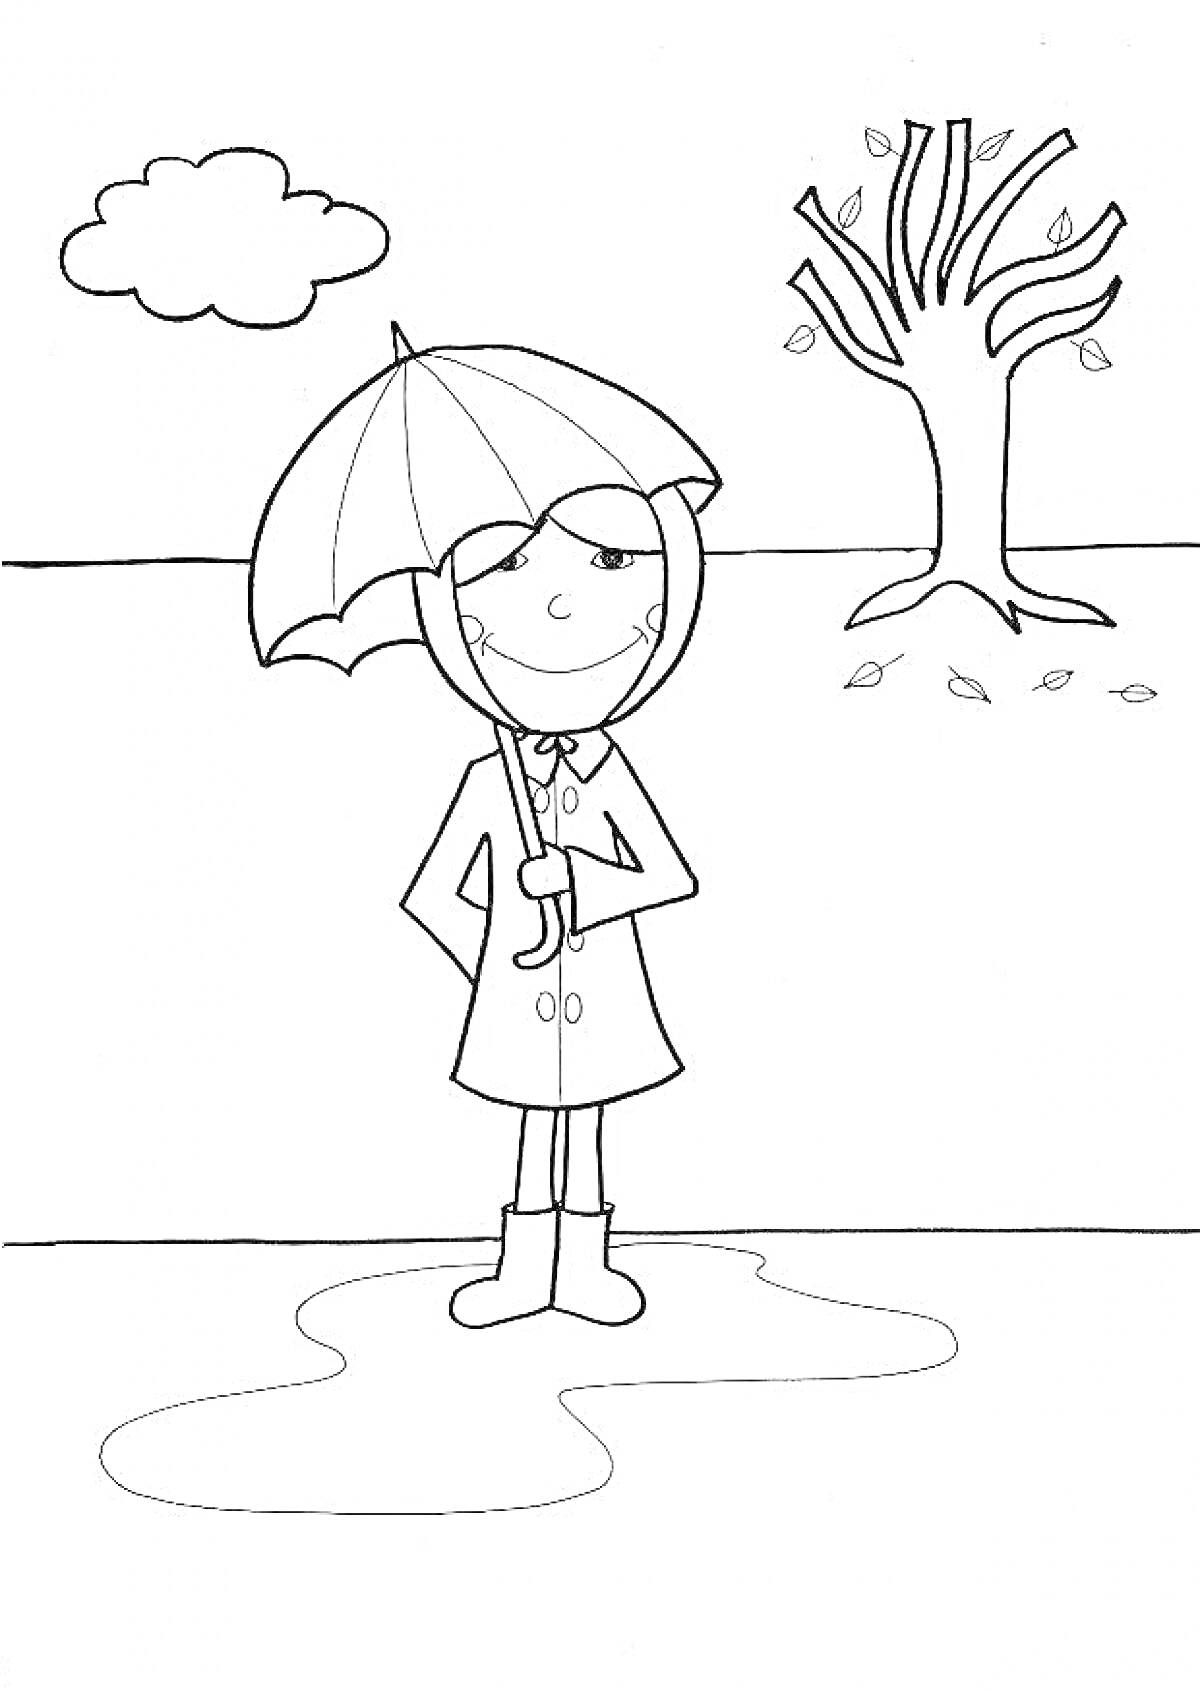 Раскраска Девочка с зонтом осенью рядом с деревом и лужей